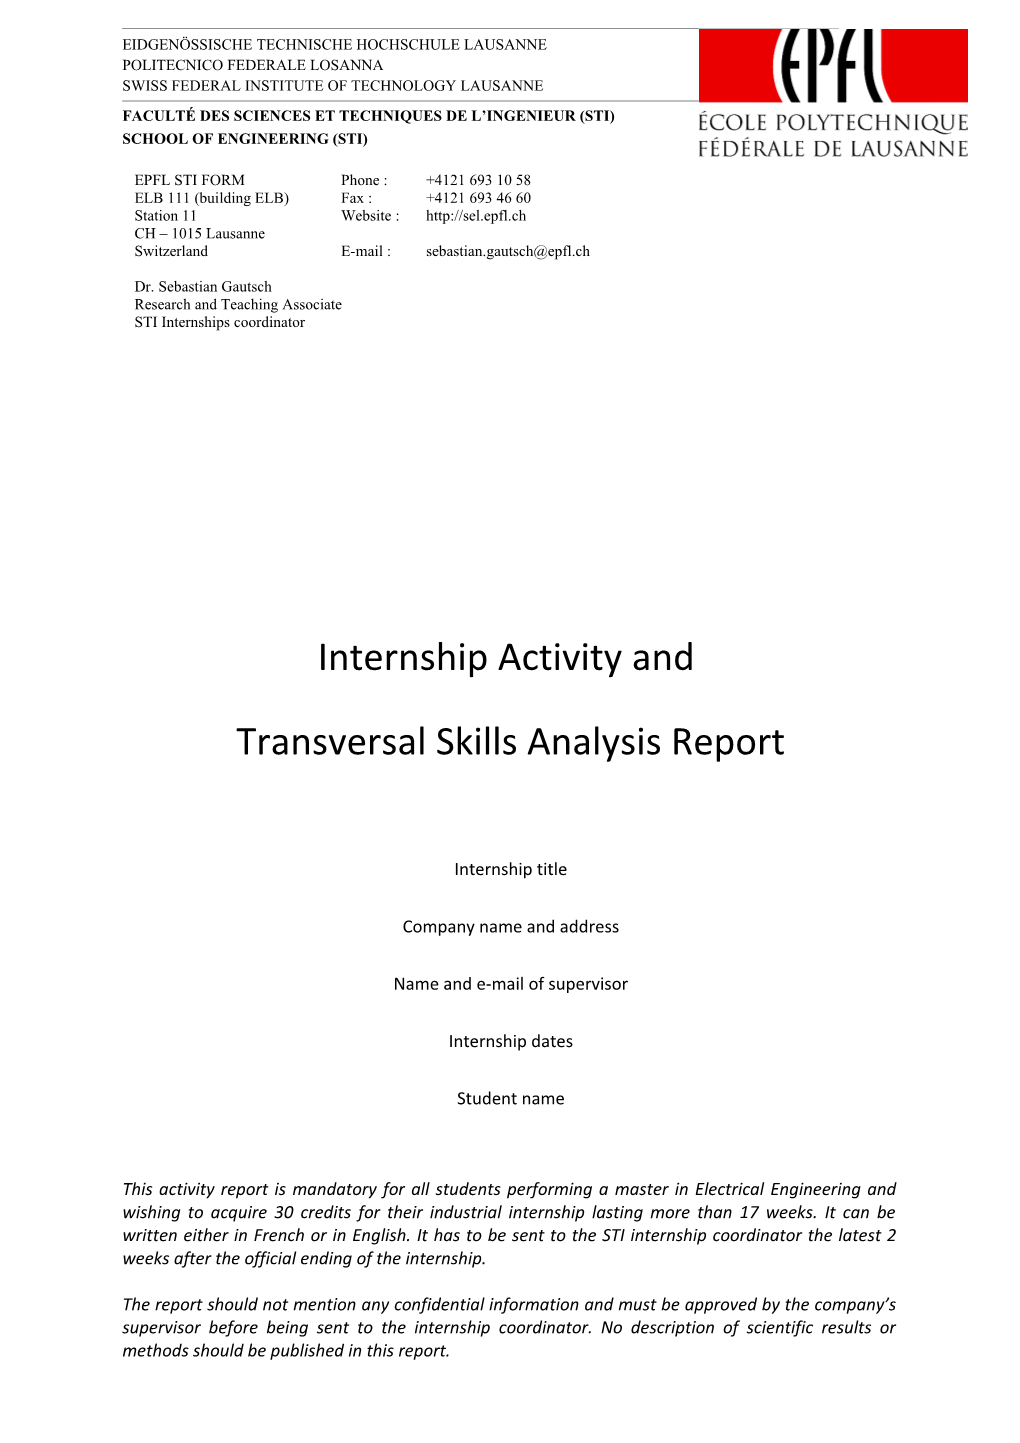 Transversal Skills Analysis Report